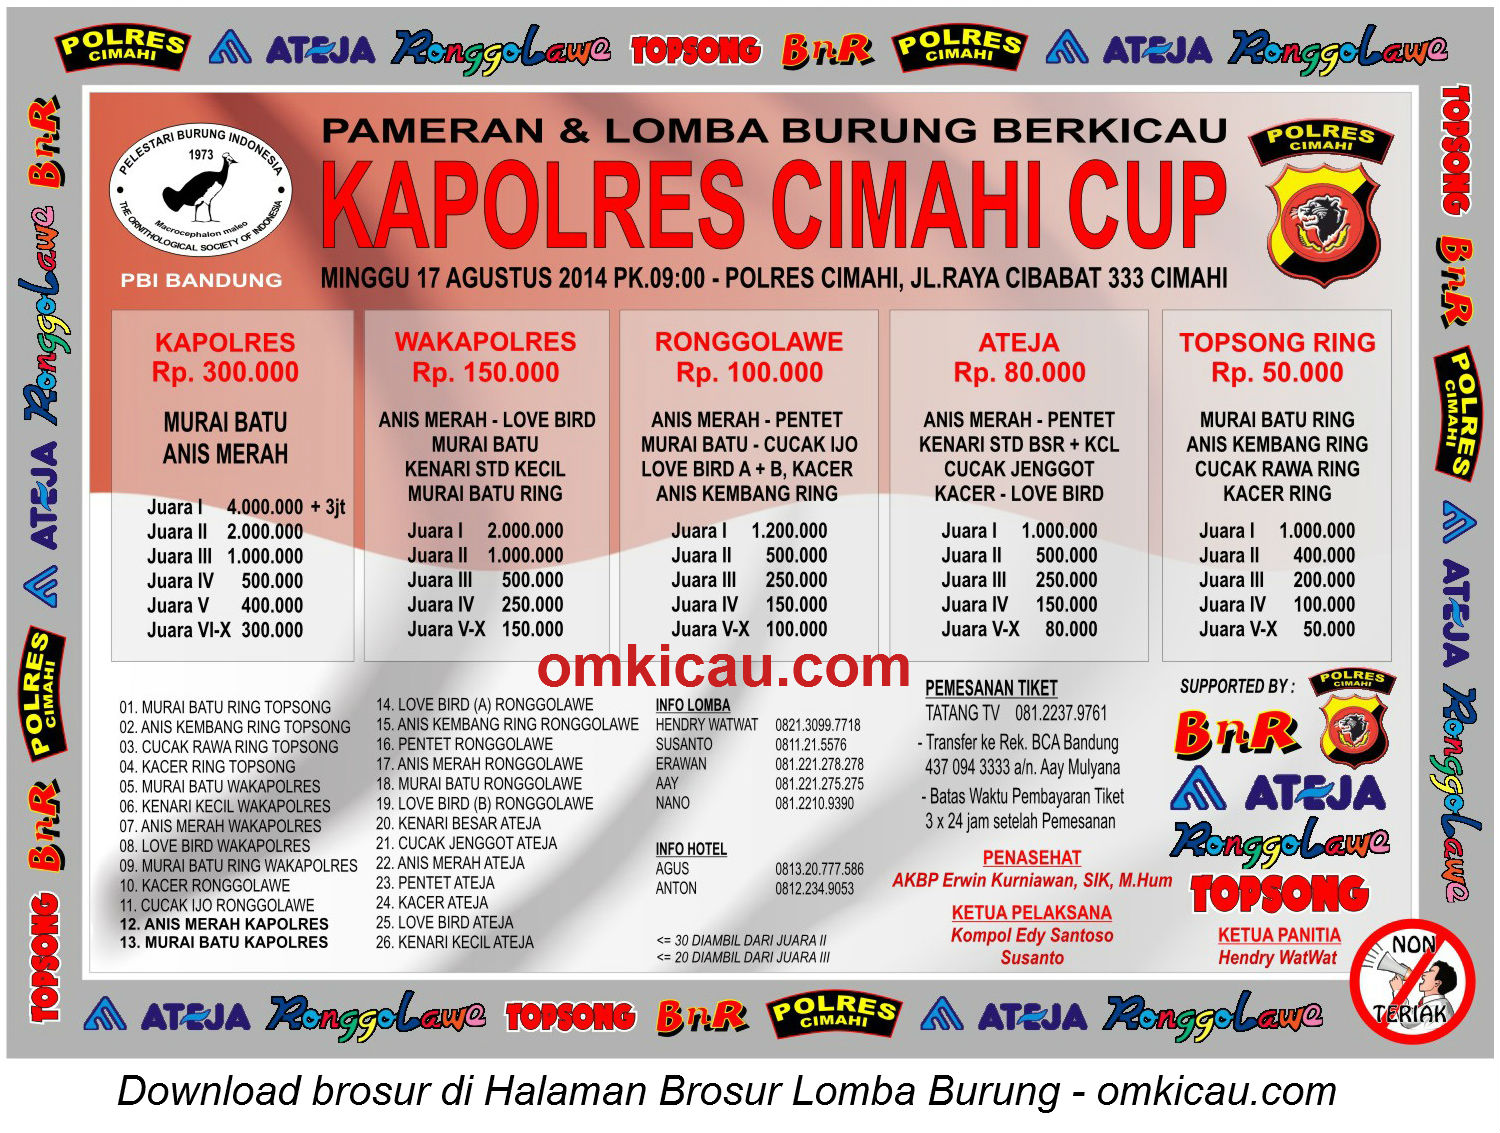 Brosur Lomba Burung Berkicau Kapolres Cimahi Cup, Cimahi, 17 Agustus 2014